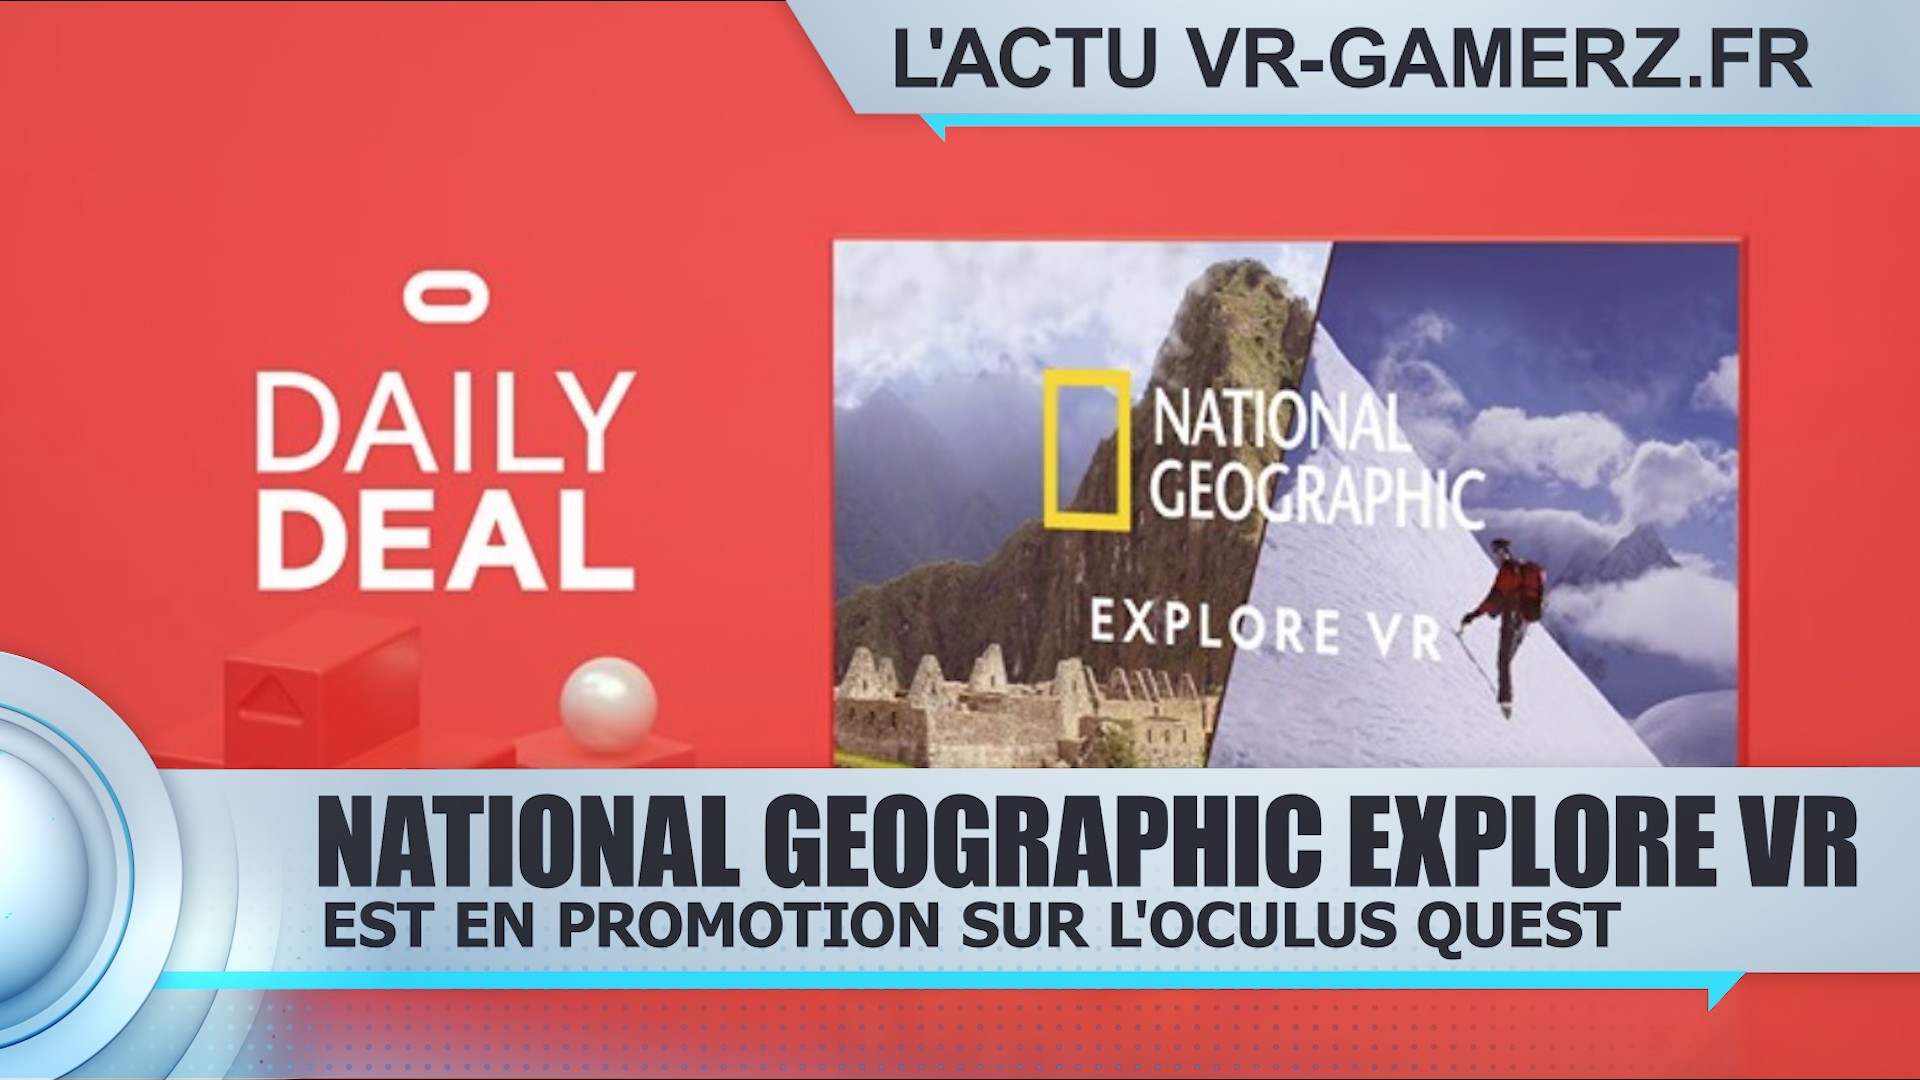 National Geographic Explore VR est en promotion sur Oculus quest !